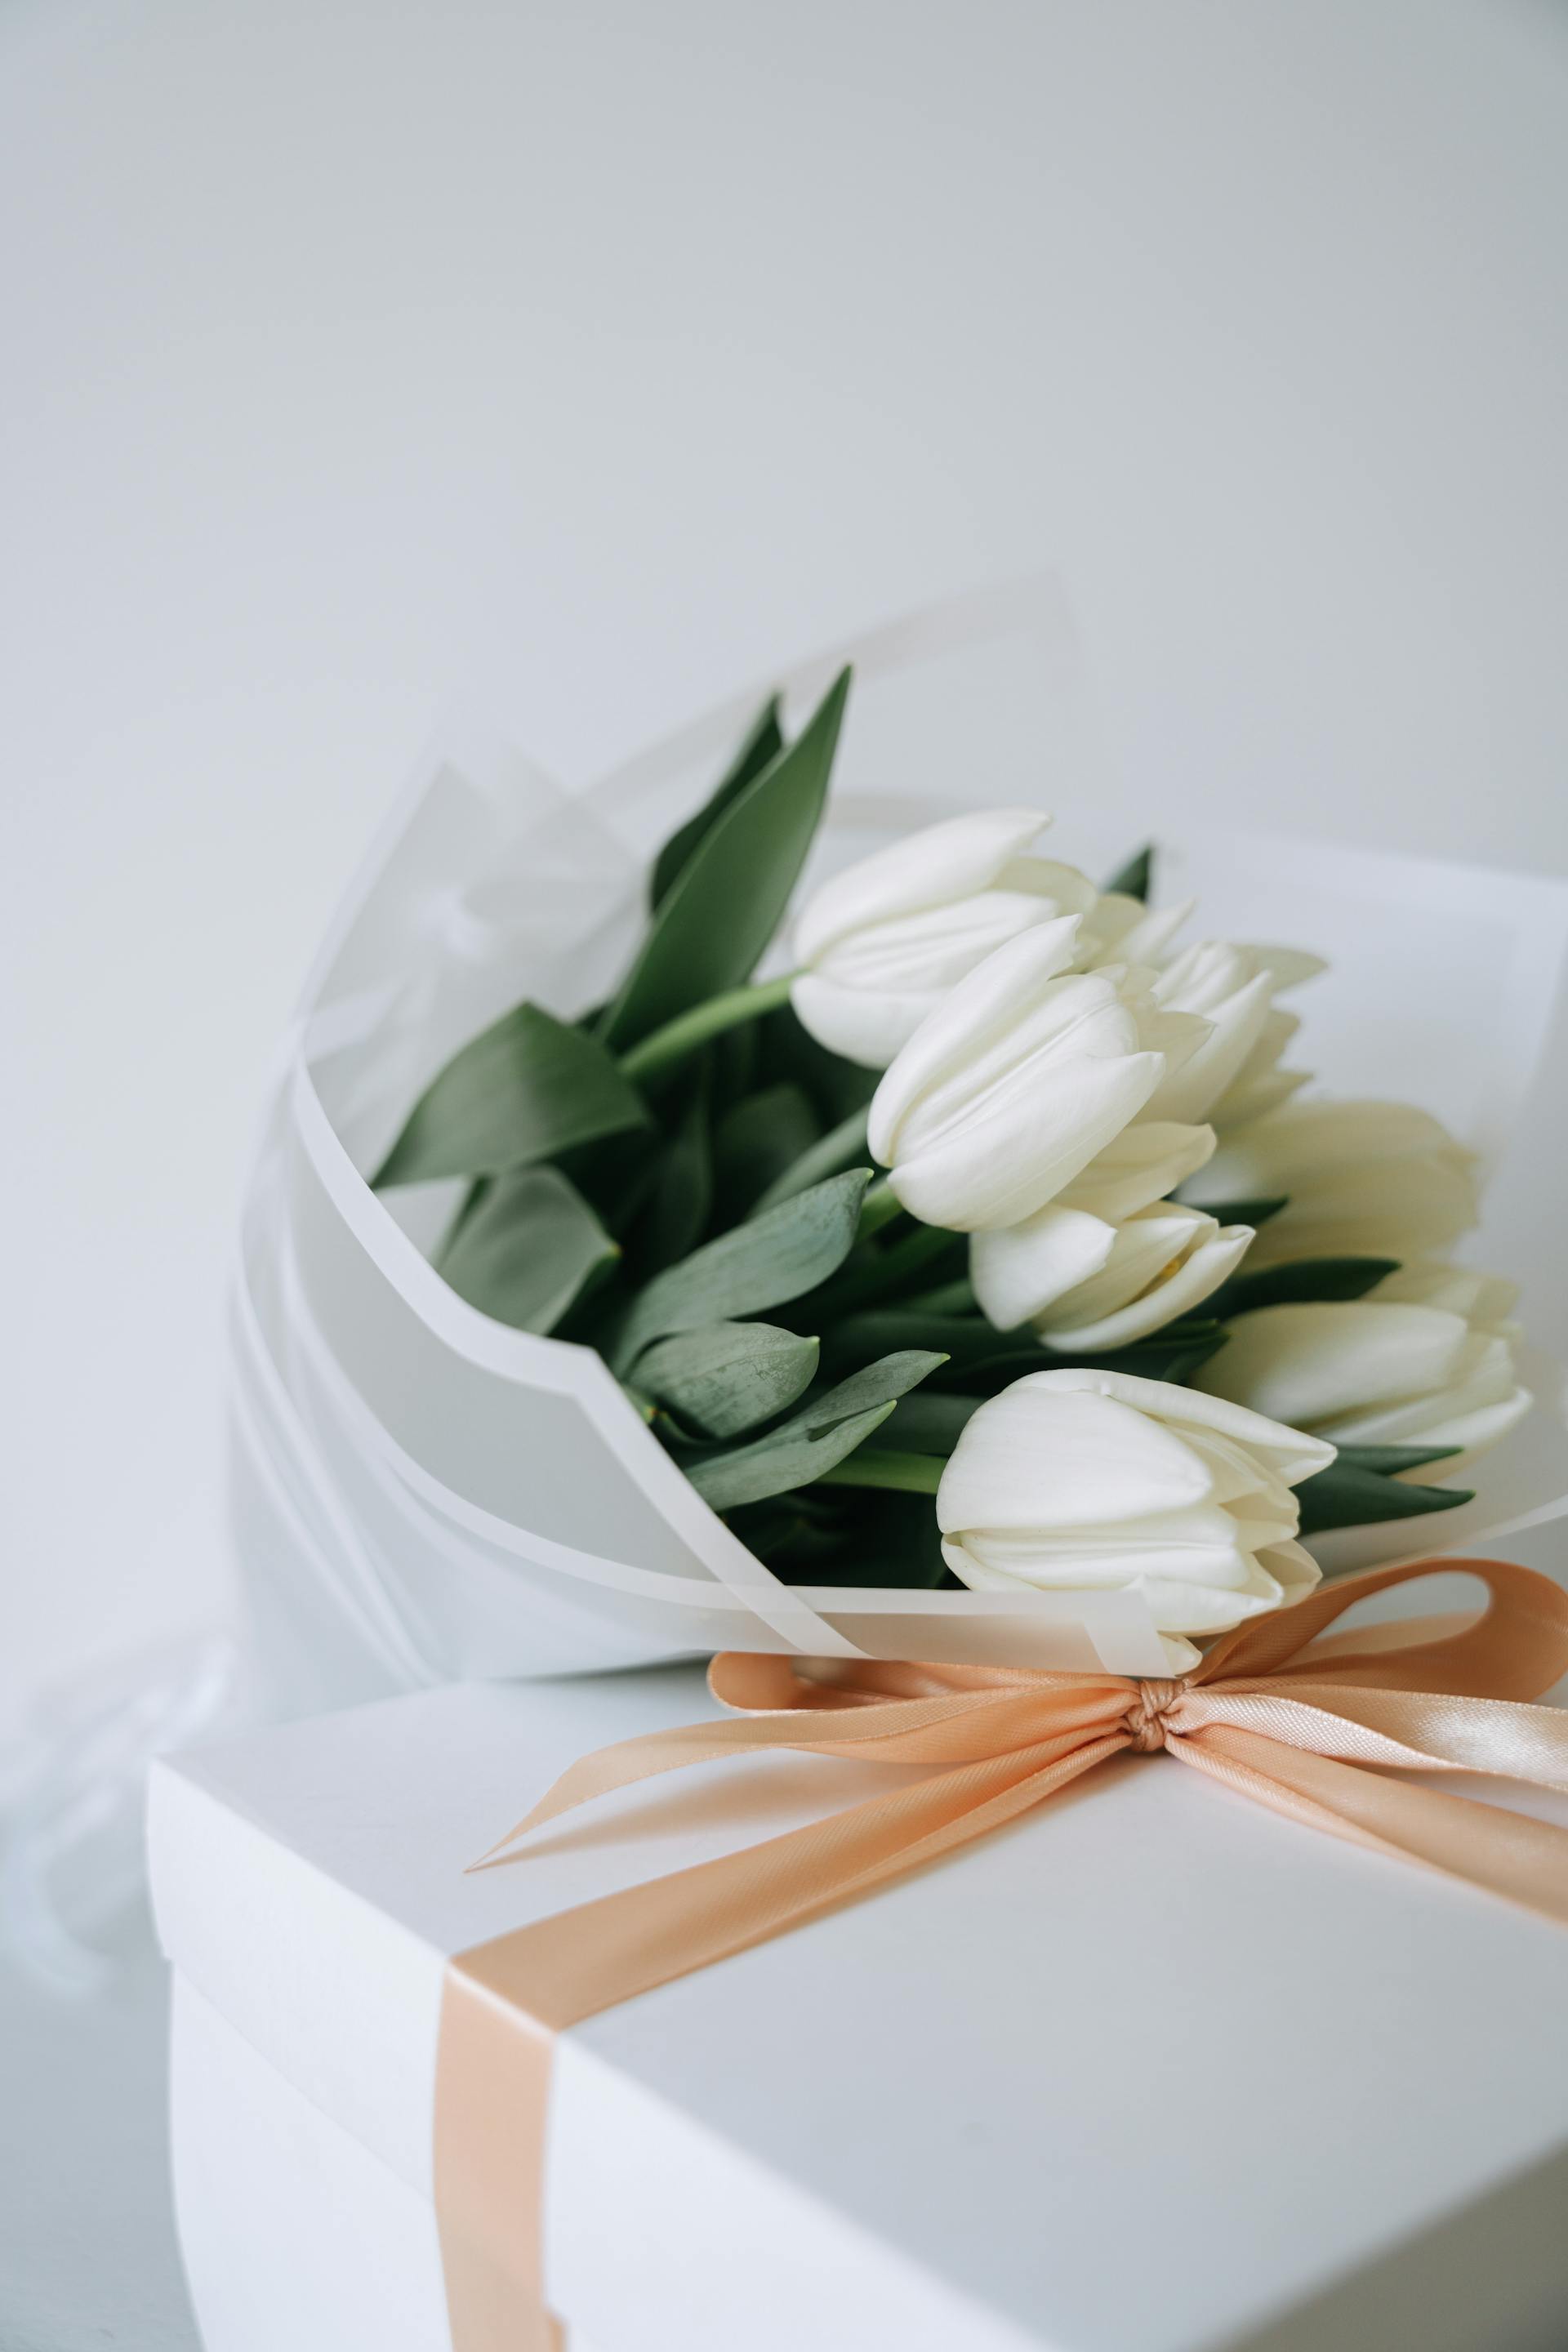 Ein Strauß weißer Tulpen und eine Geschenkbox | Quelle: Pexels